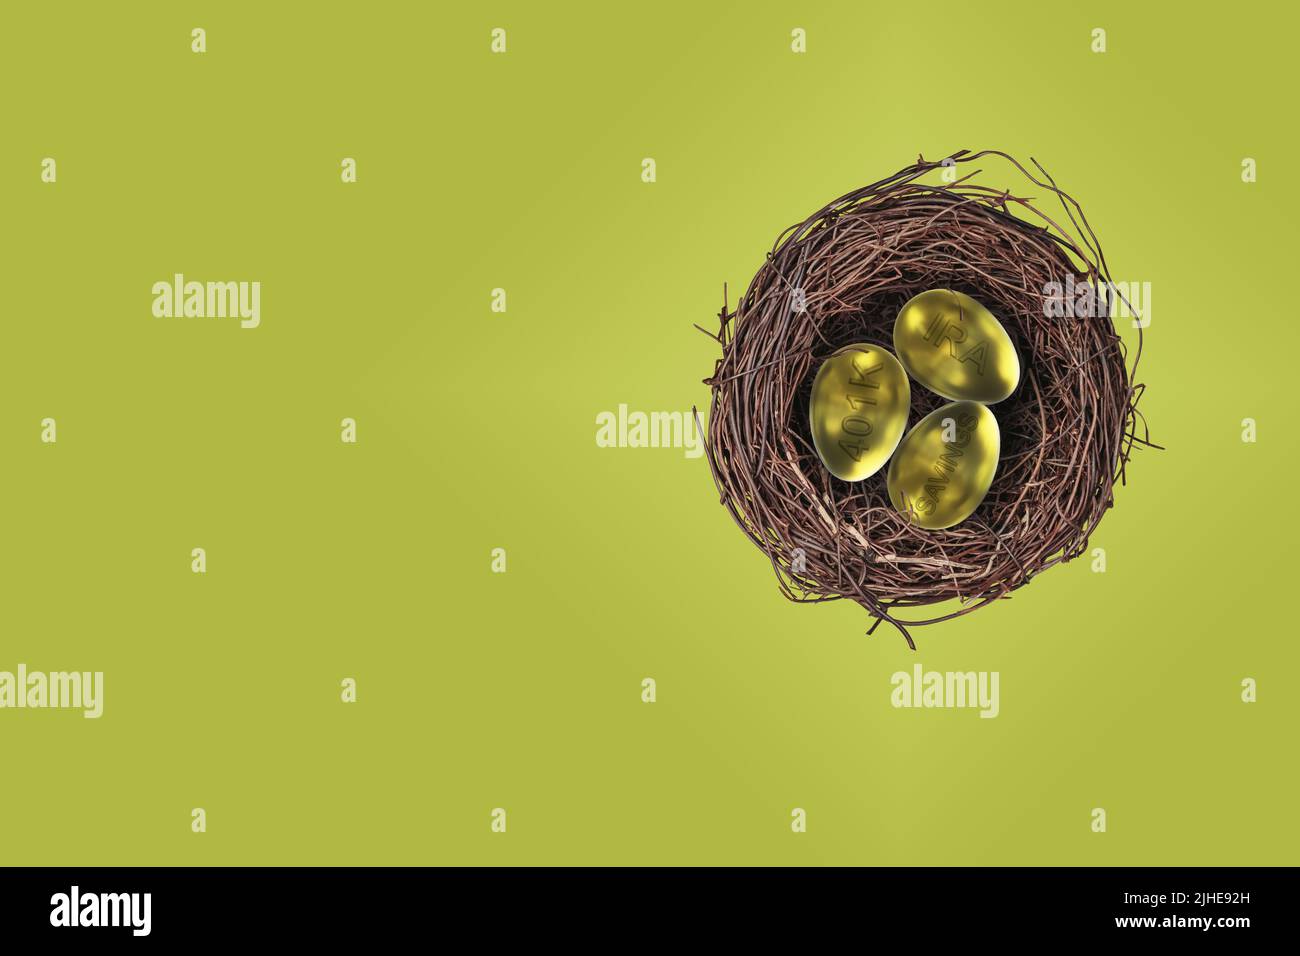 Nesteier Pension Topf Konzept Gold goldene Eier mit IRA 401K & Ersparnisse geprägt bunt grünen Hintergrund Stockfoto